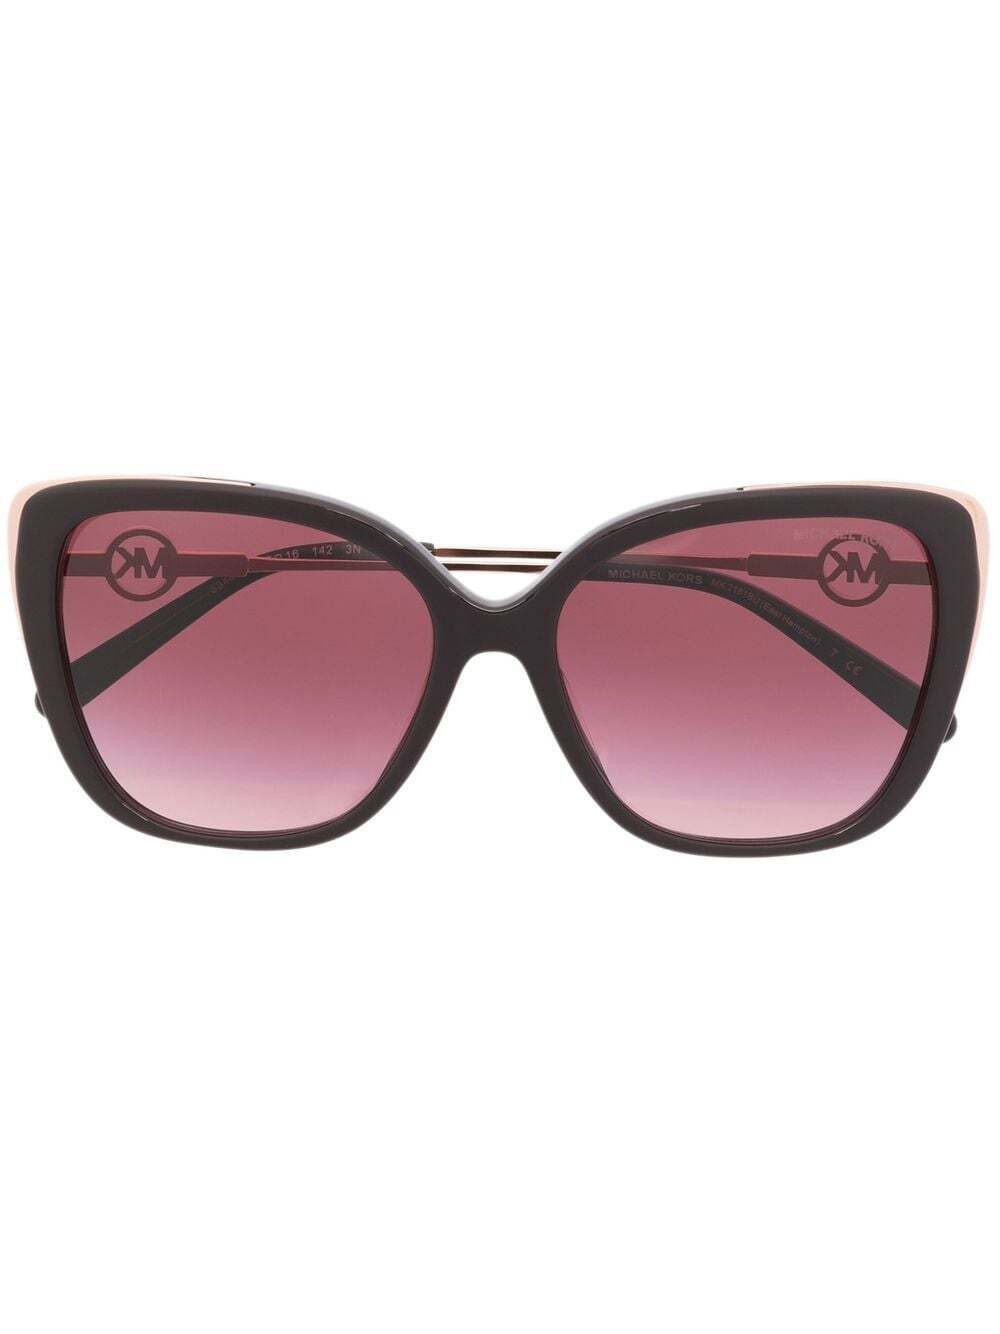 Michael Kors cat-eye sunglasses - Brown